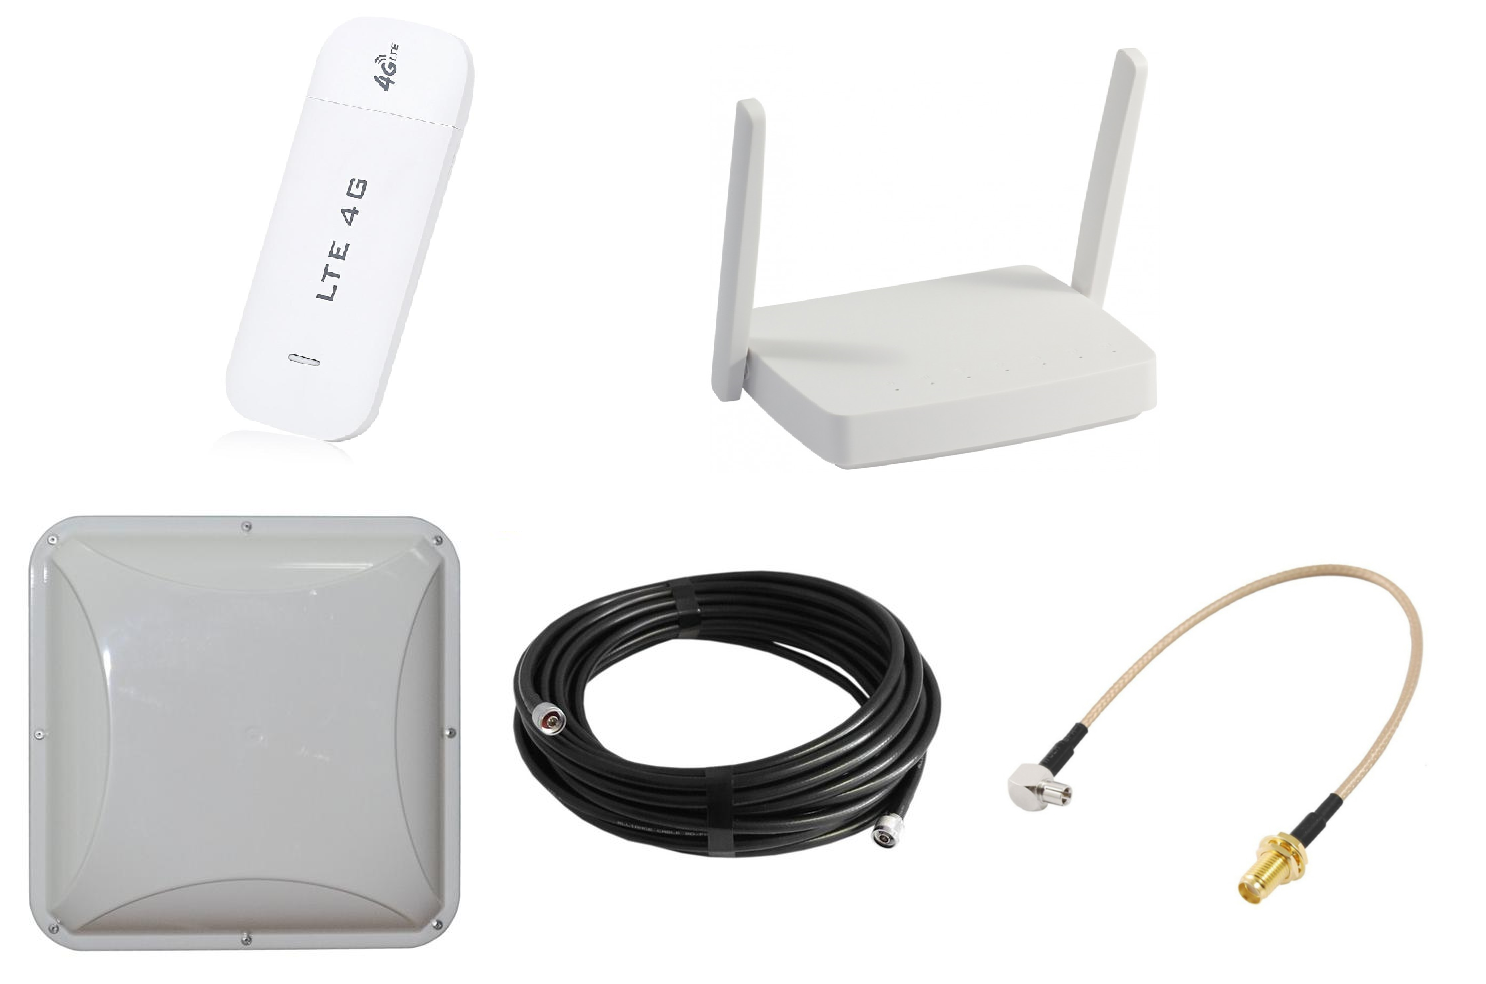 Мобильный интернет c. Антенна комнатная VEGATEL Ant-700/2700-Pi (Тип а). GSM модем 3g/4g/LTE. 4g USB-модем, Wi-Fi-роутер. USB 4g модем с внешней антенной.